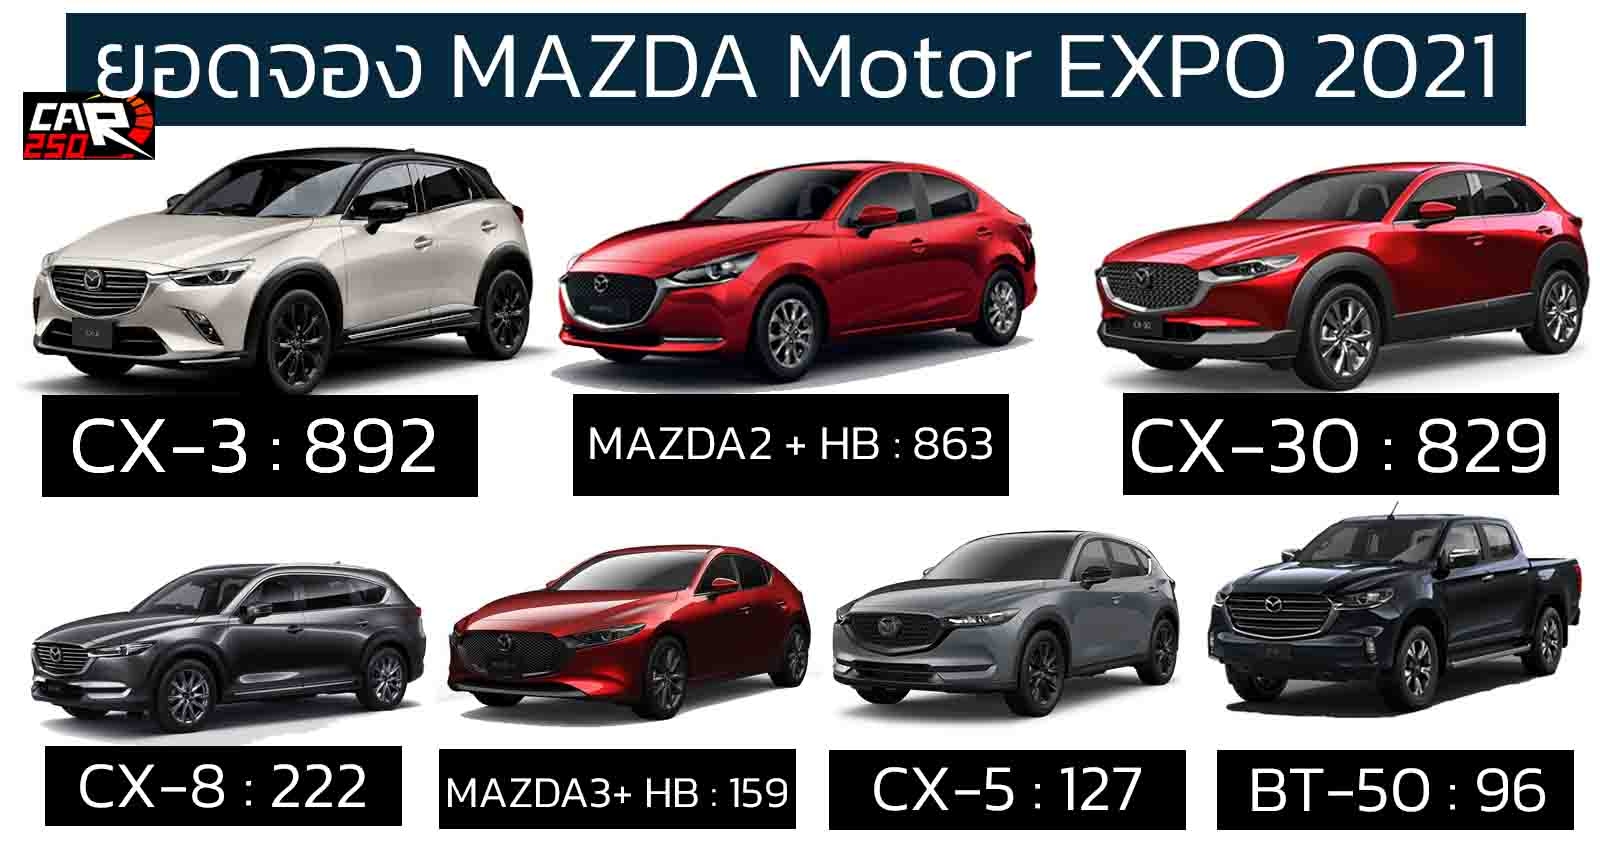 ยอดจอง MAZDA ในงาน Motor Expo 2021 รวม 3,189 คัน